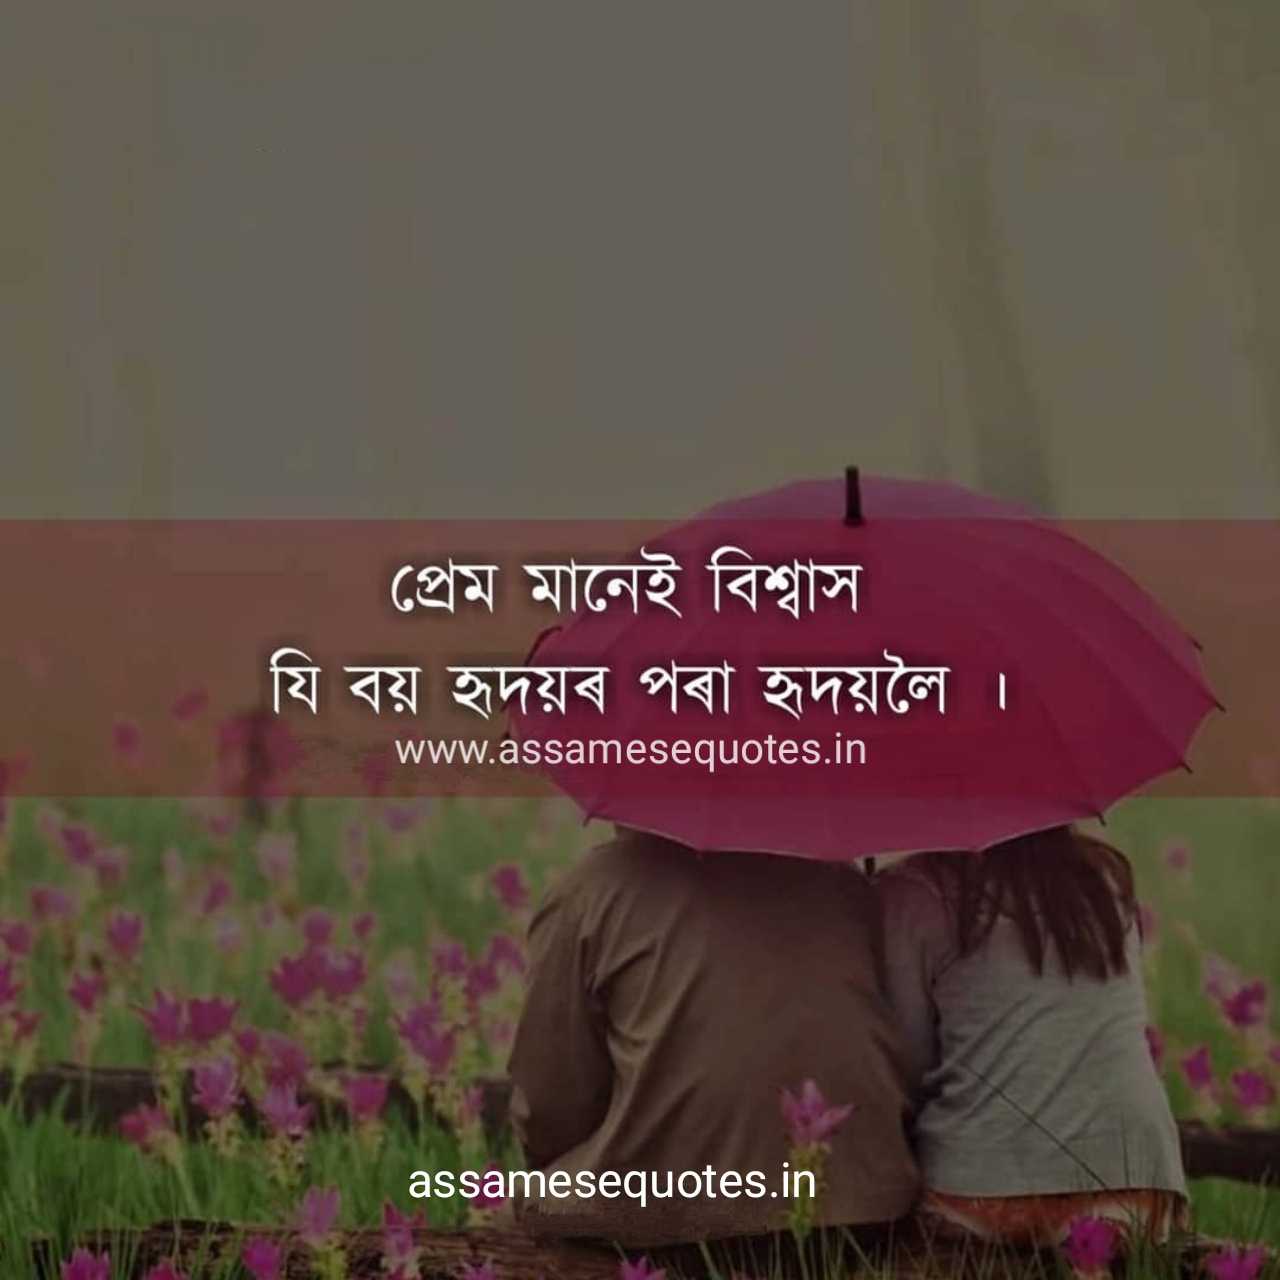 Assamese love status